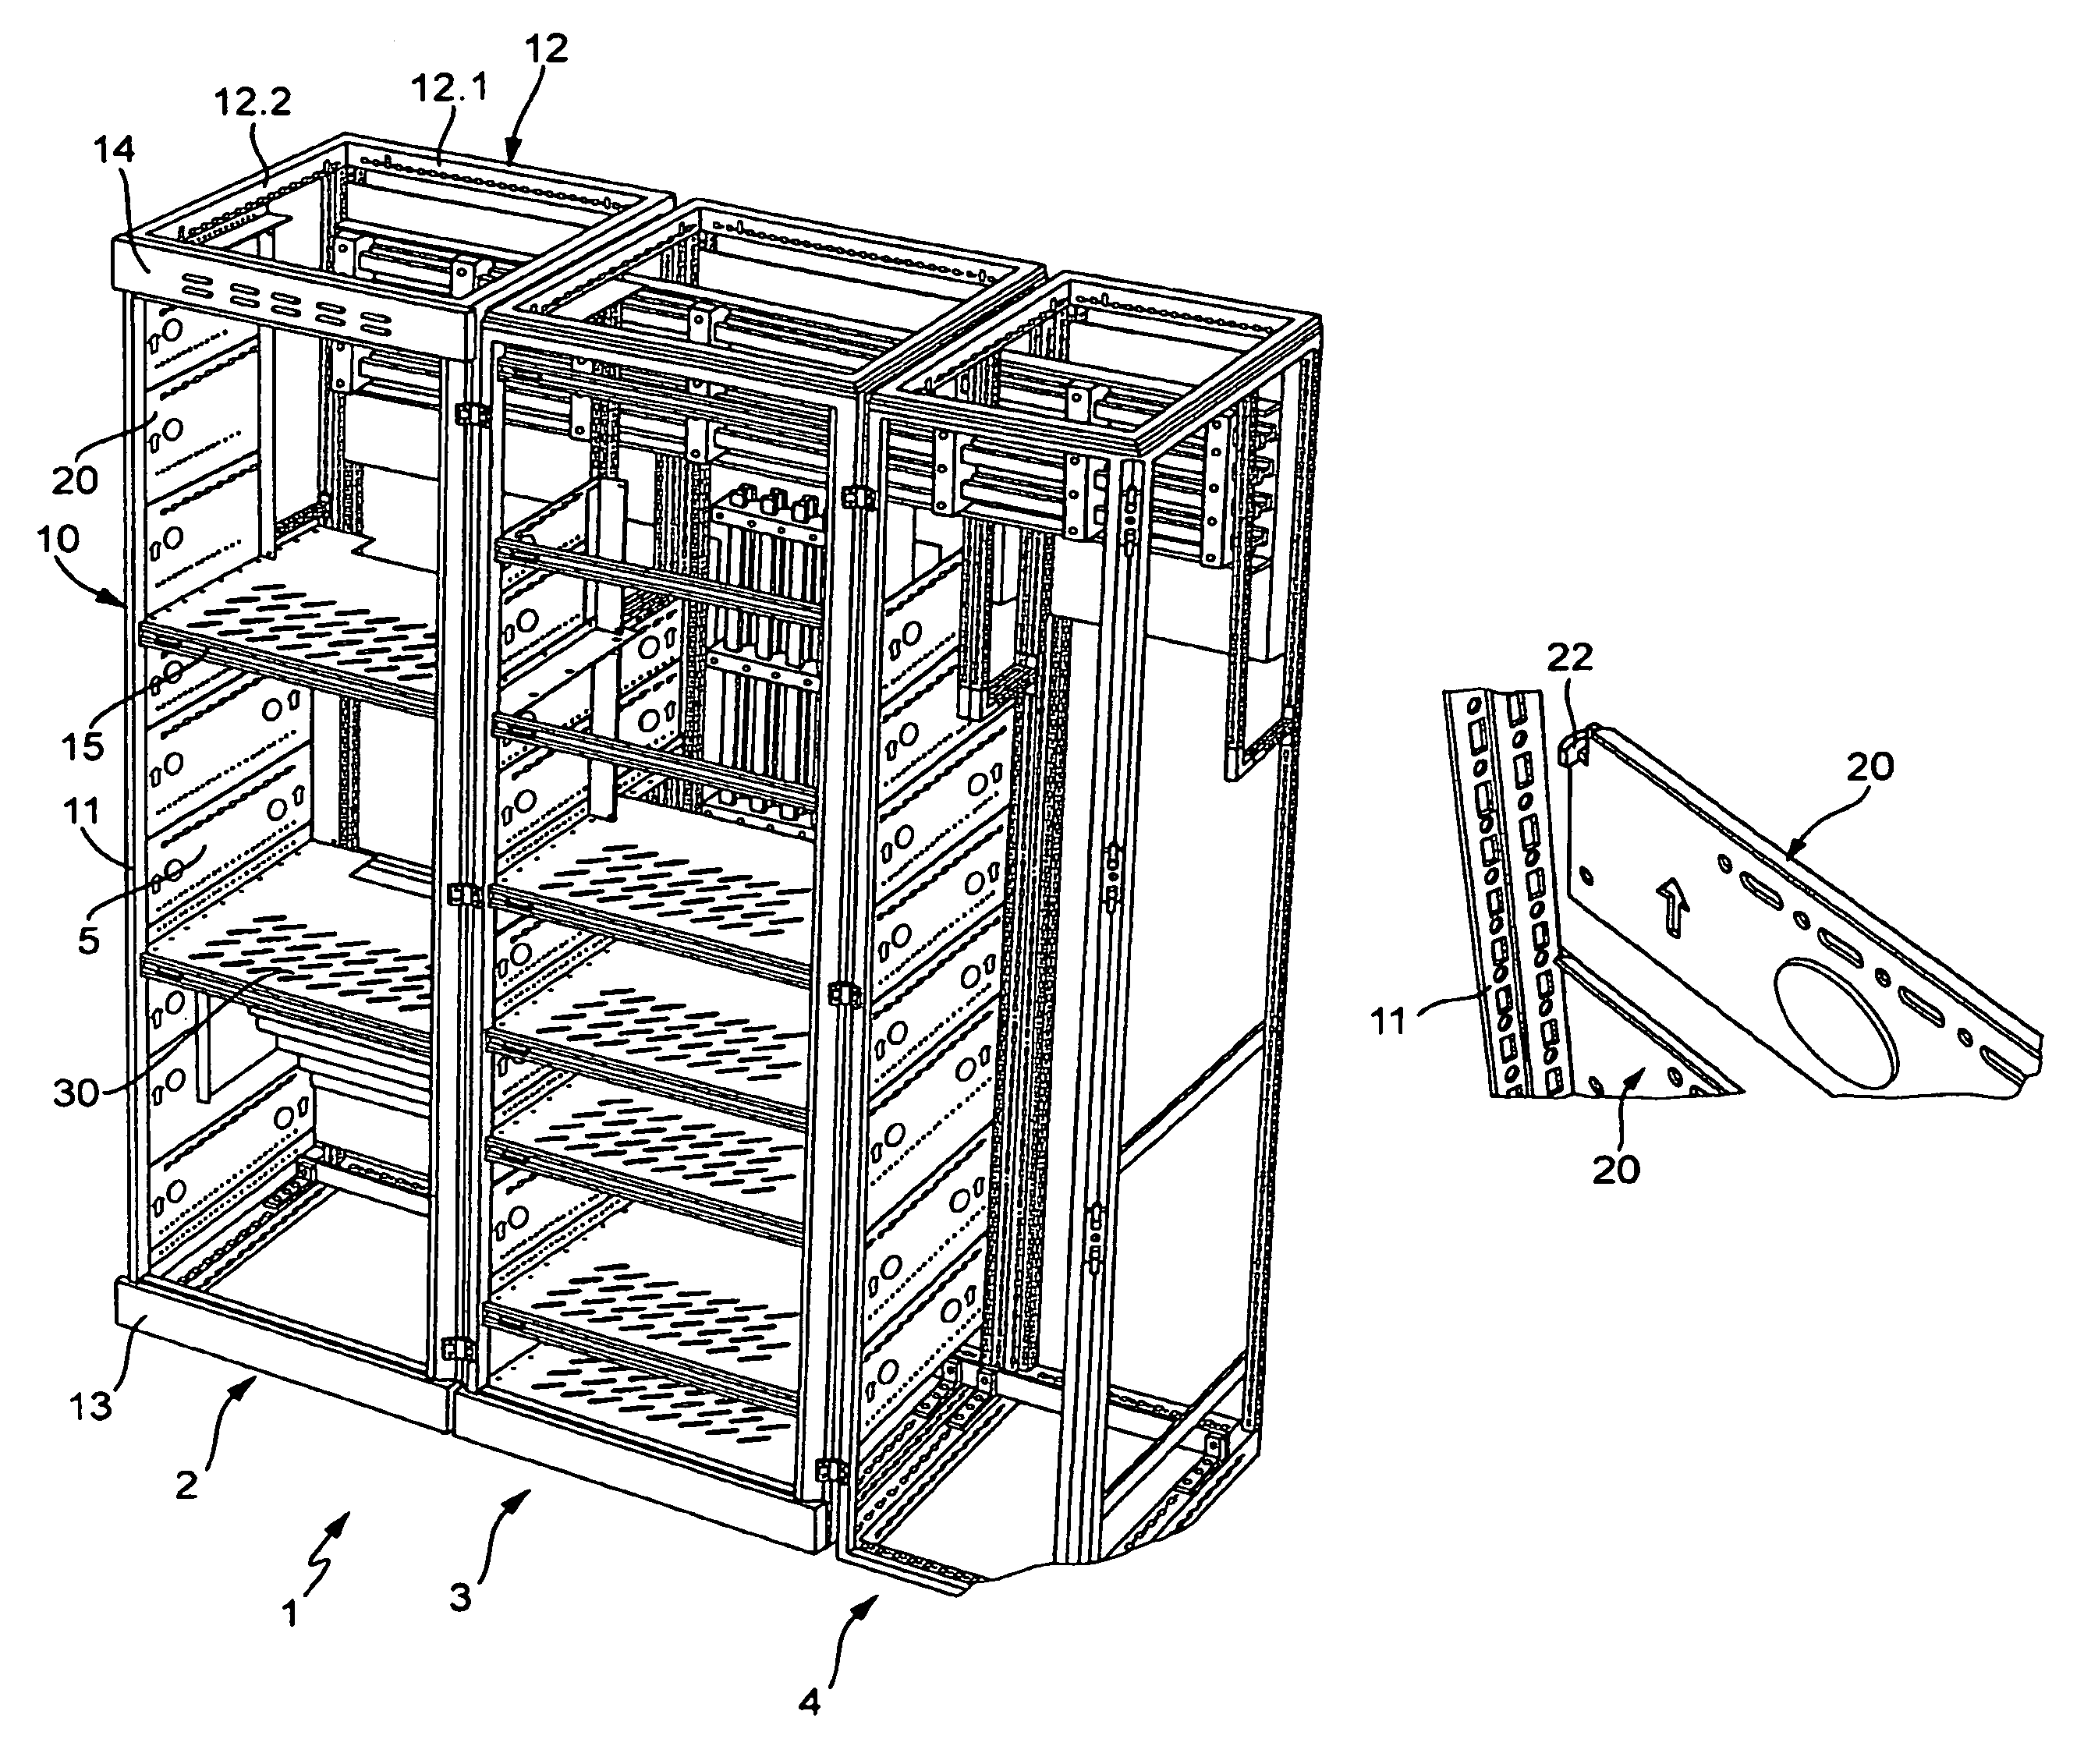 Control box arrangement